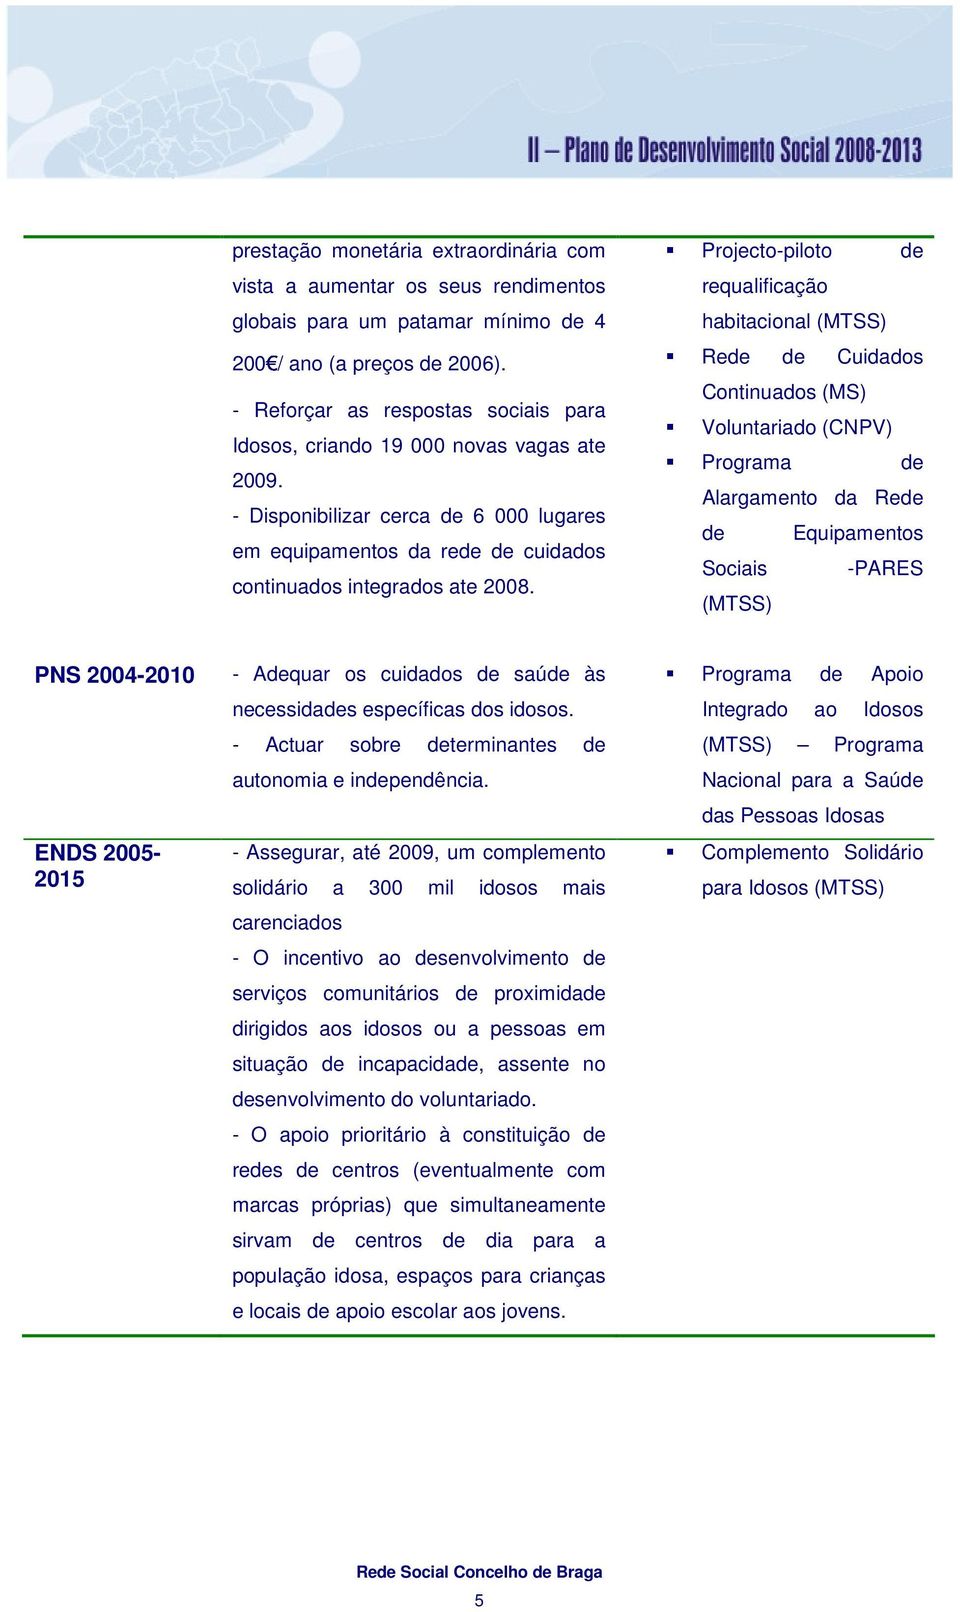 Projecto-piloto de requalificação habitacional (MTSS) Rede de Cuidados Continuados (MS) Voluntariado (CNPV) Programa de Alargamento da Rede de Equipamentos Sociais -PARES (MTSS) PNS 2004-2010 ENDS